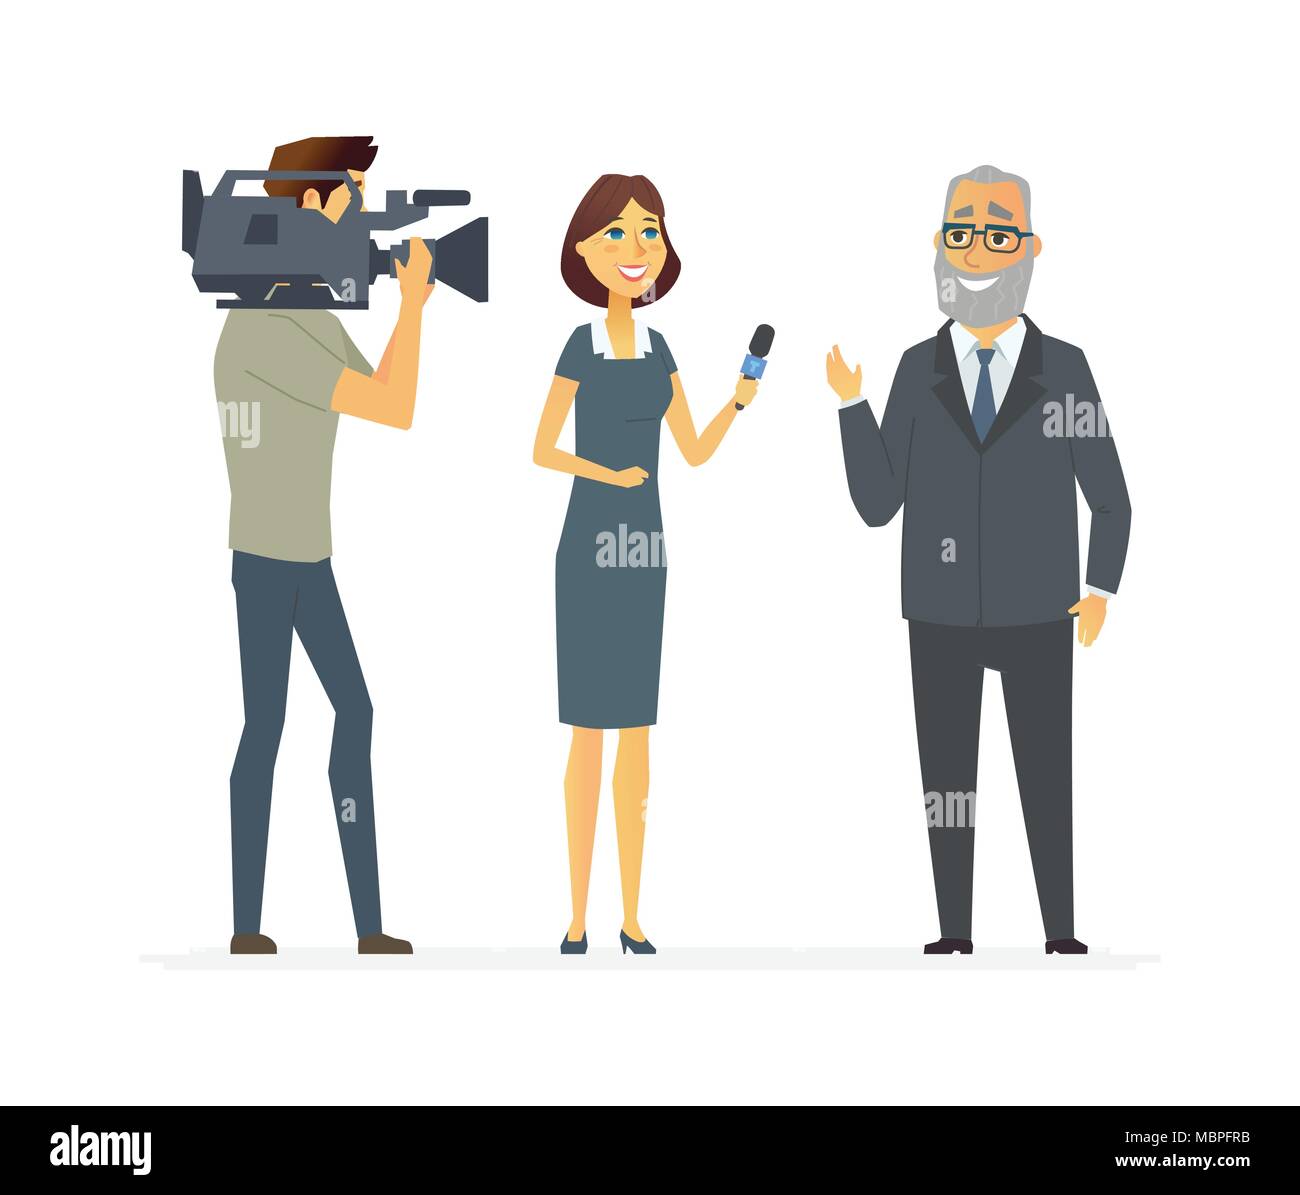 Die TV-Moderatorin in einem Interview - cartoon Menschen Charakter isoliert Abbildung Stock Vektor